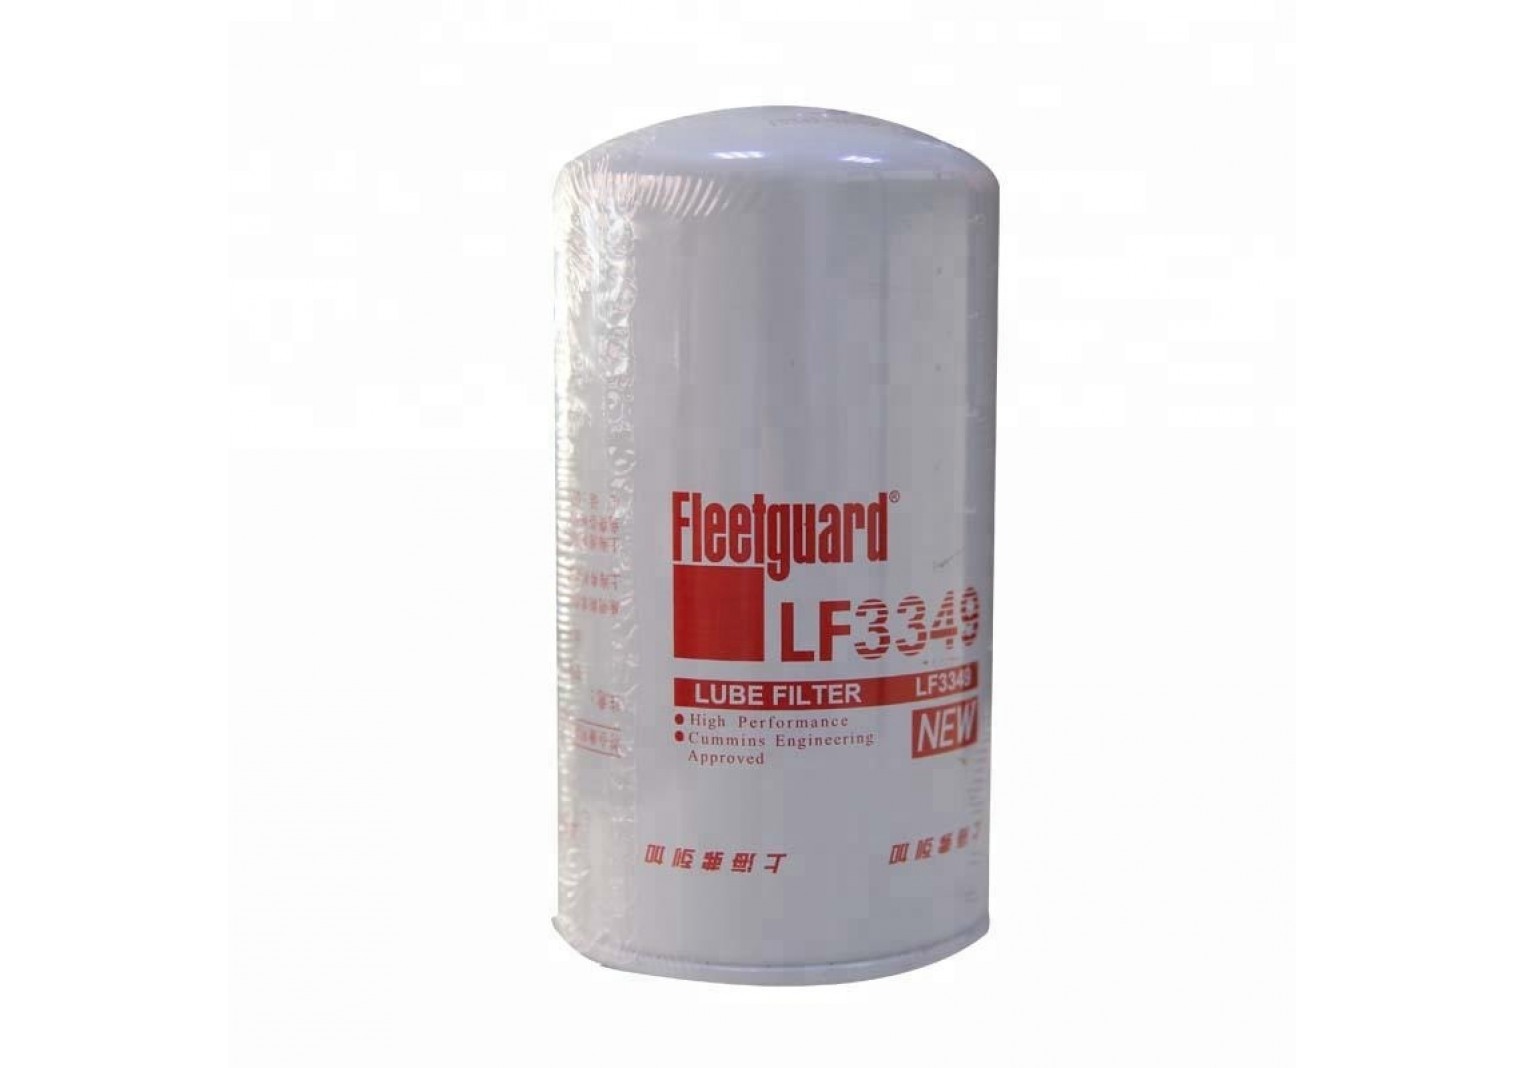 Fleetguard Oil Filter LF3349 กรองน้ำมันเครื่อง